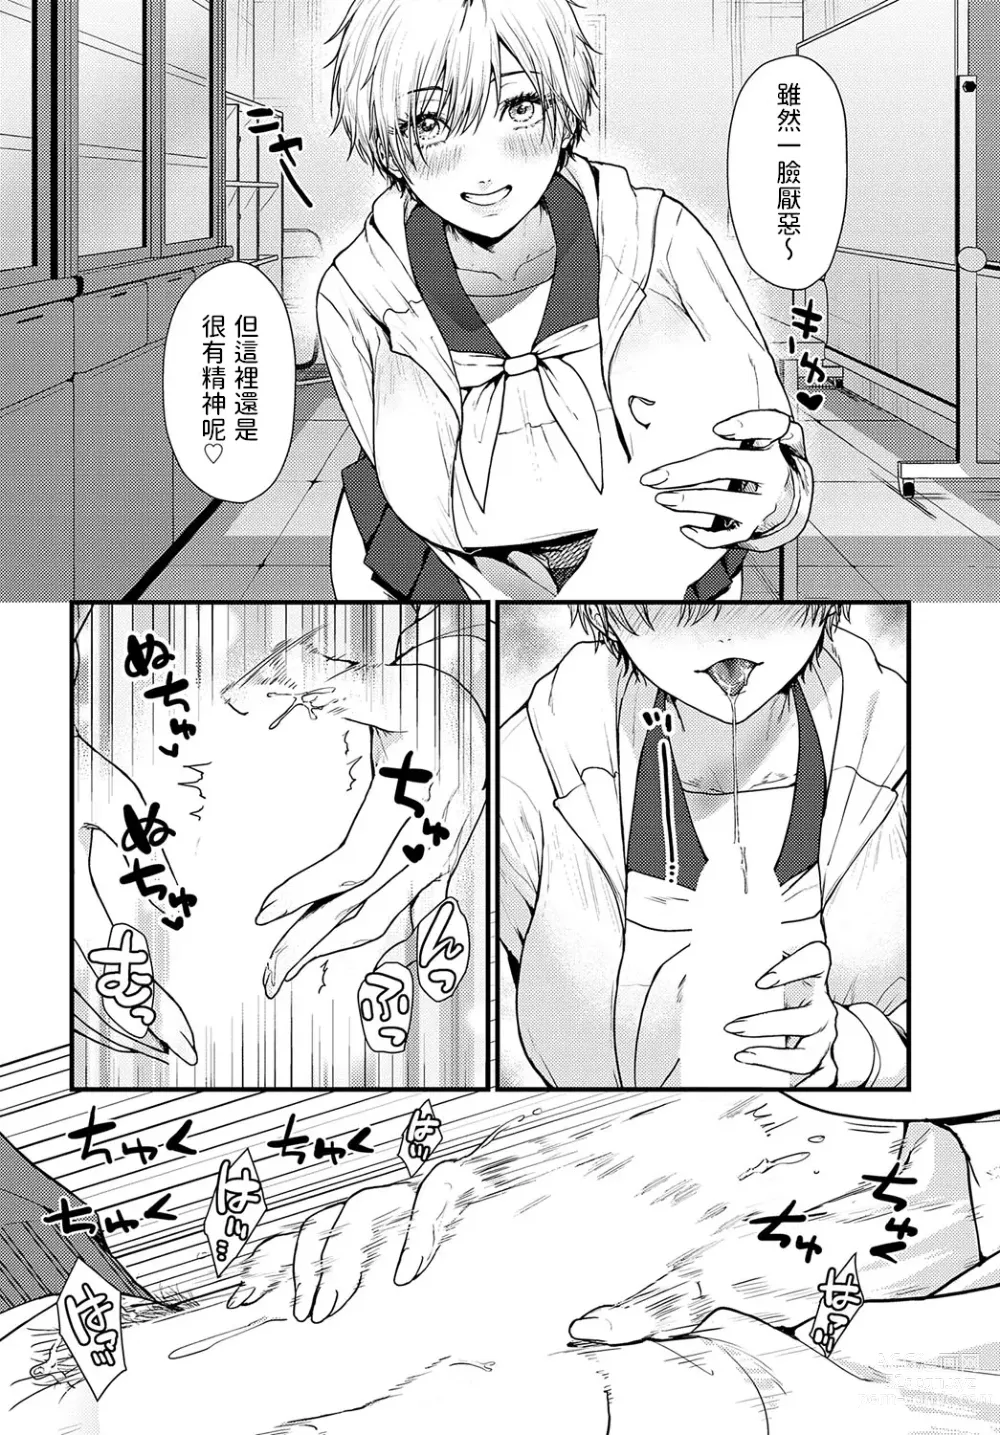 Page 6 of manga Misshitsu Swimsuit